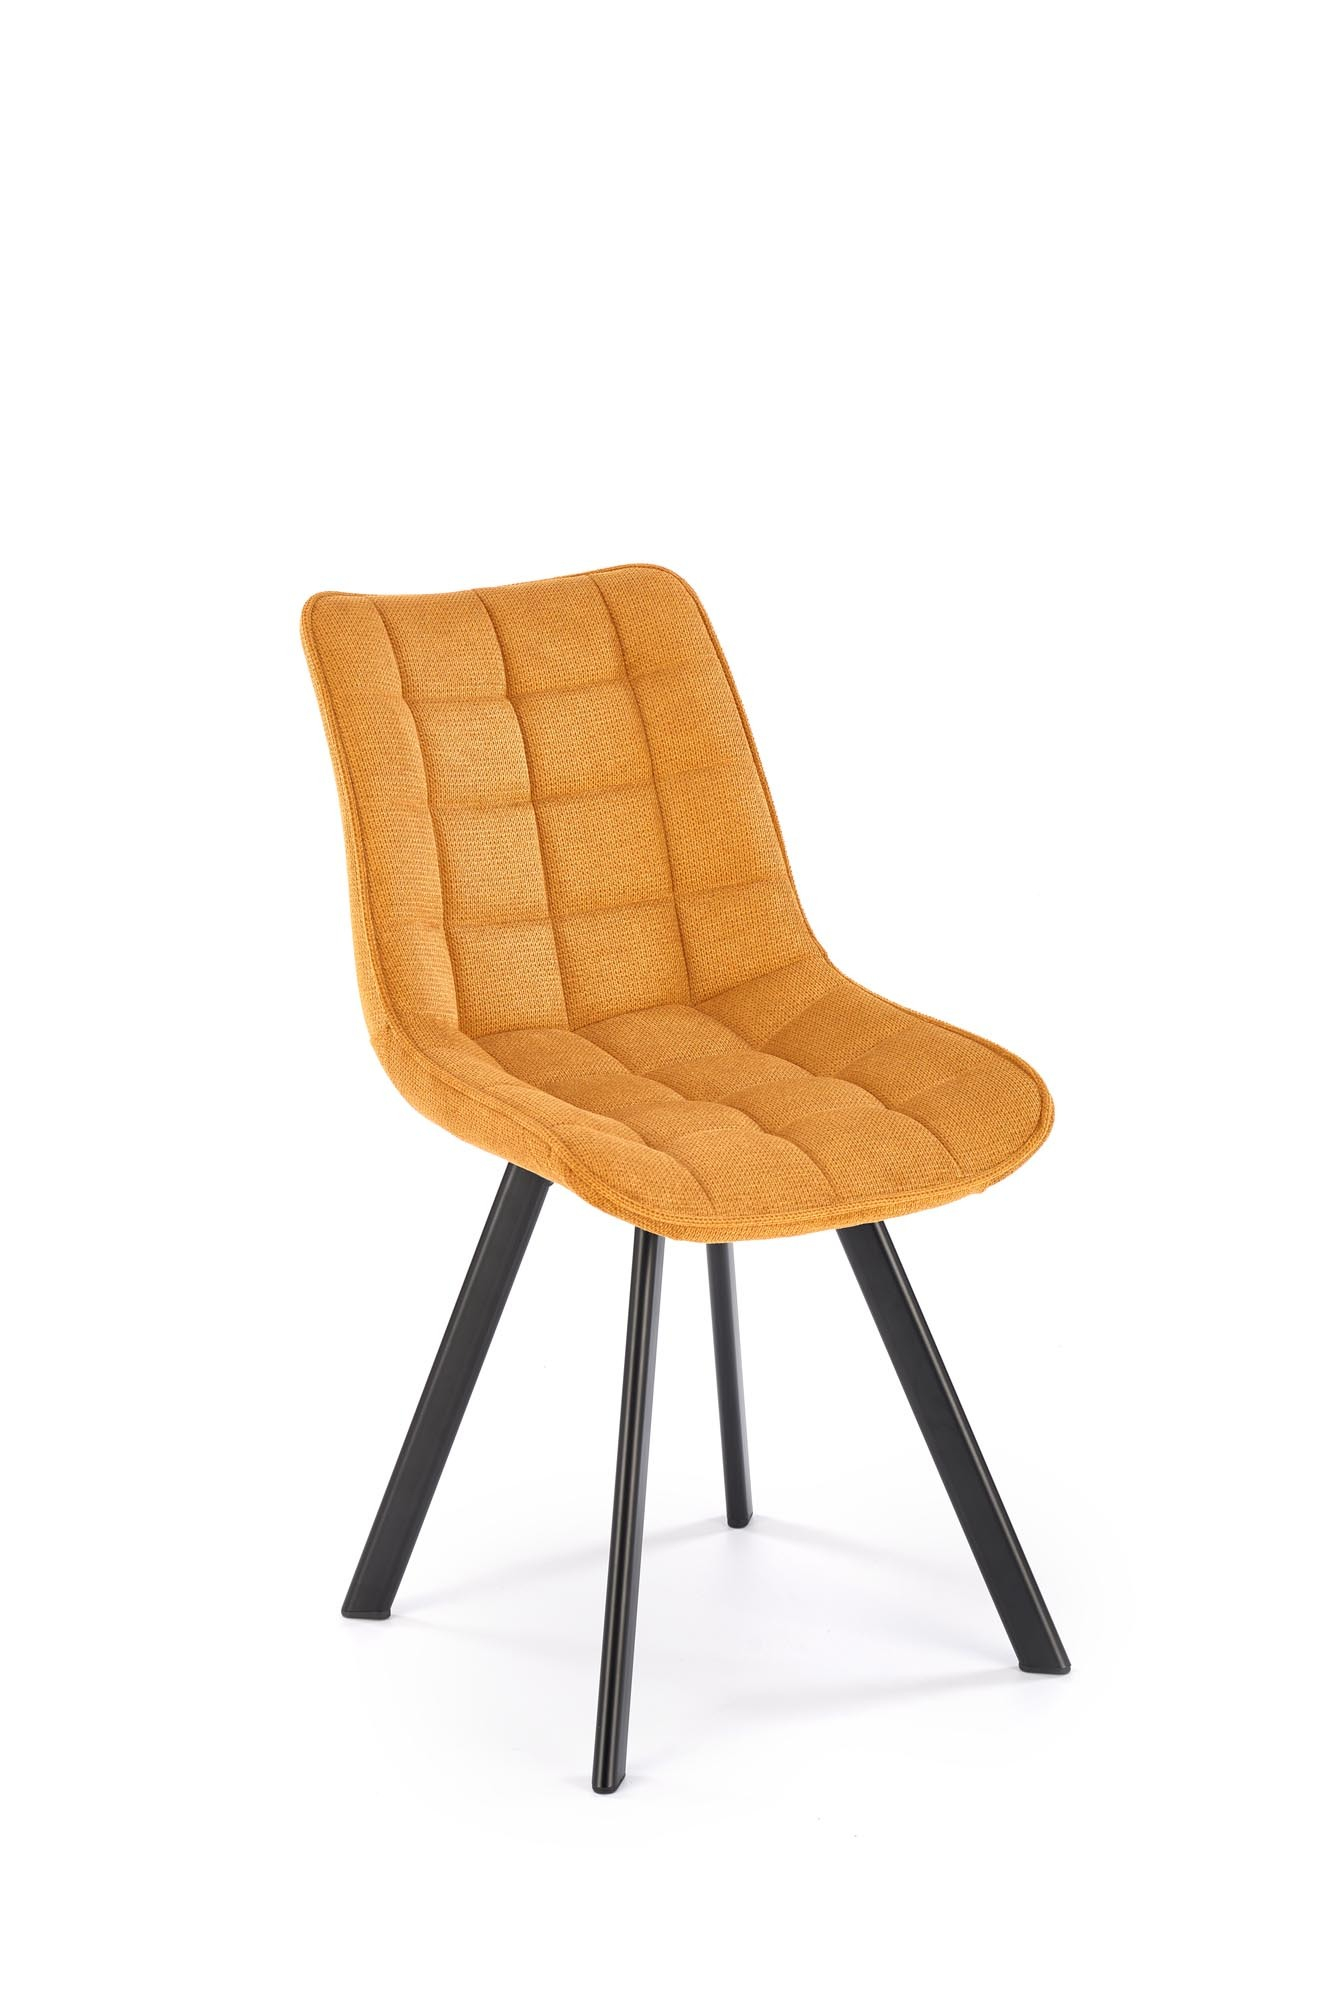 K549 krzesło musztardowy